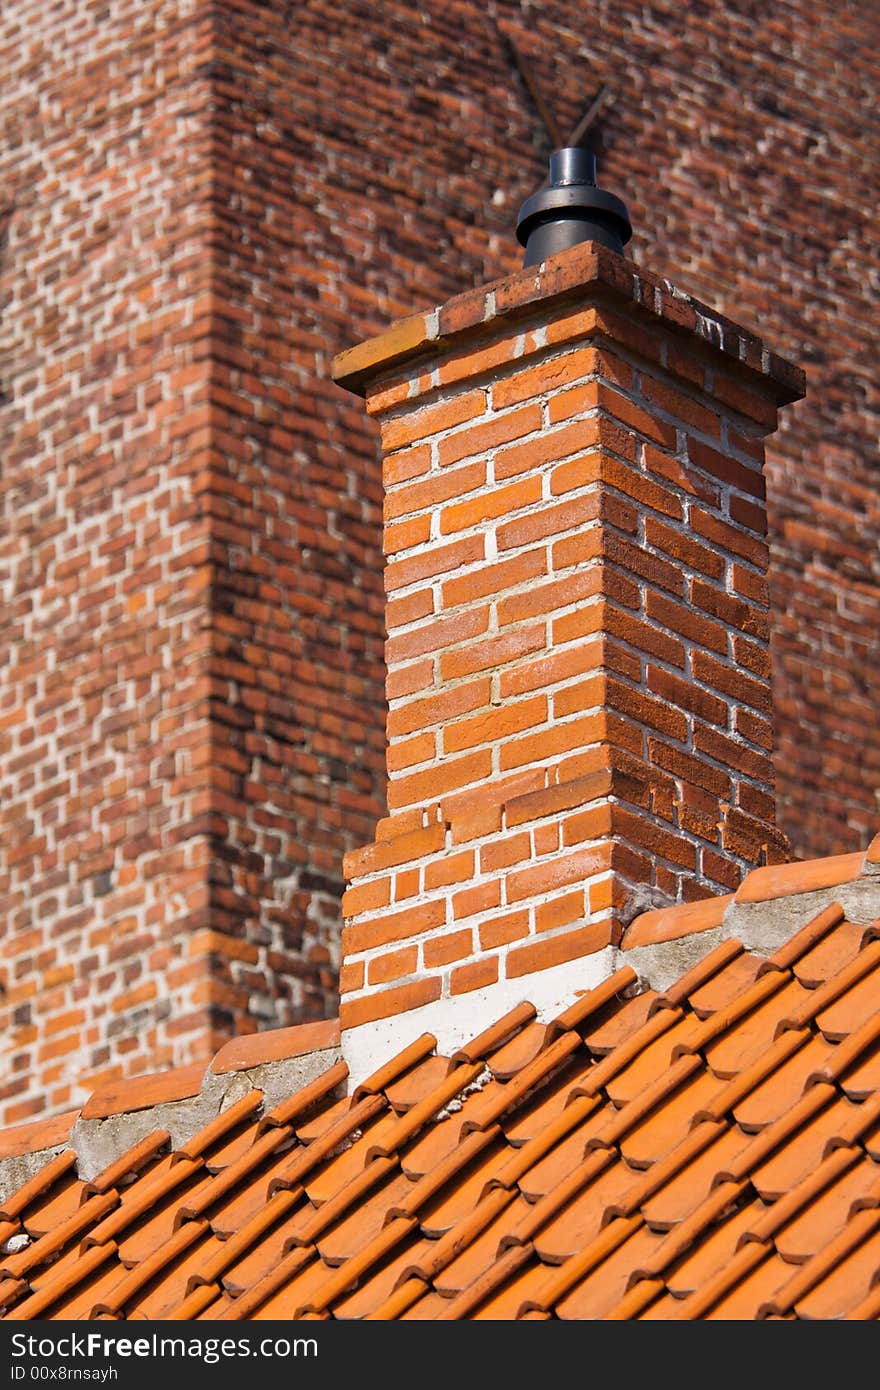 Urban abstract of a brick chimney